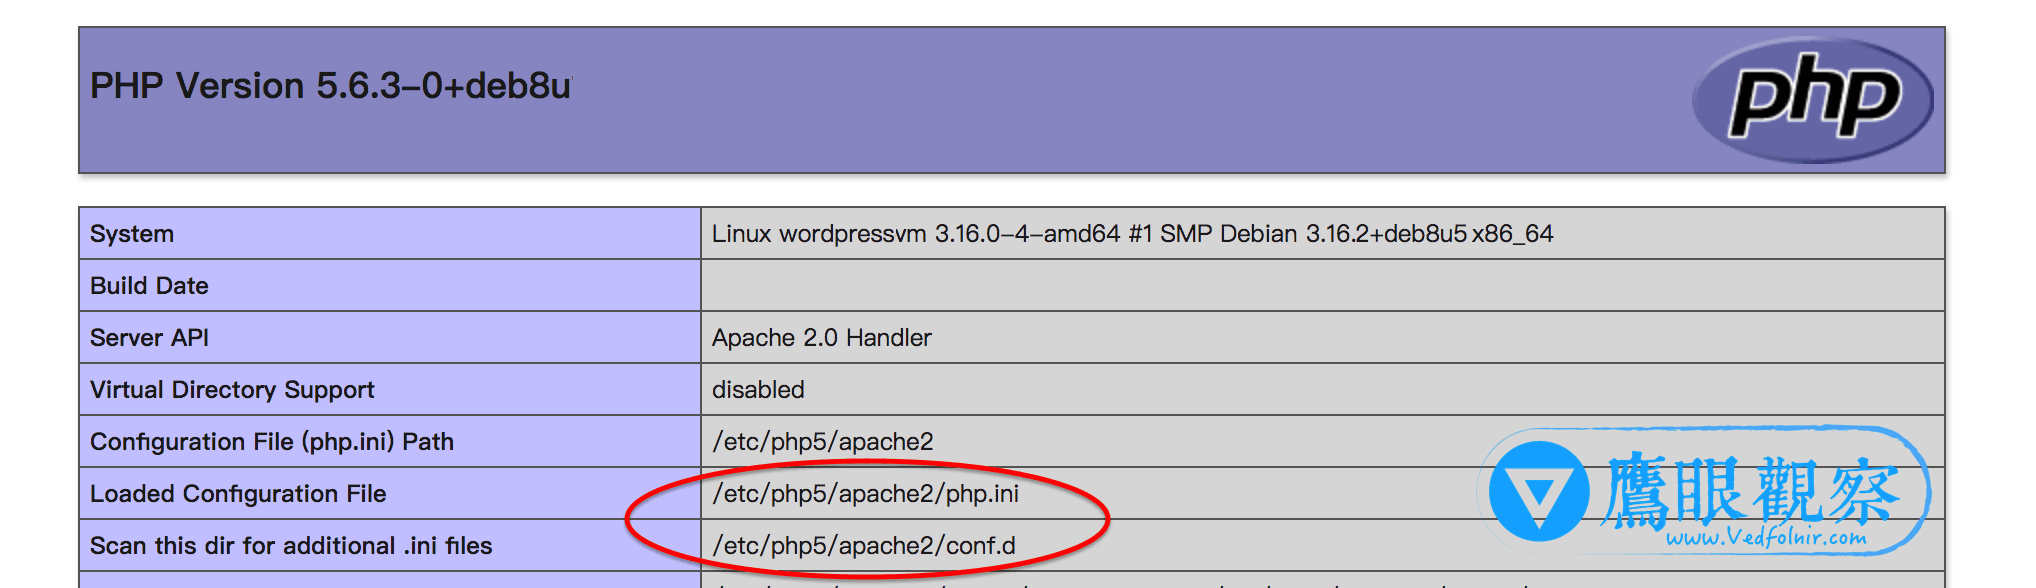 Apache伺服器「php.ini」、「conf.d」設定檔案在哪個目錄的路徑位置上？